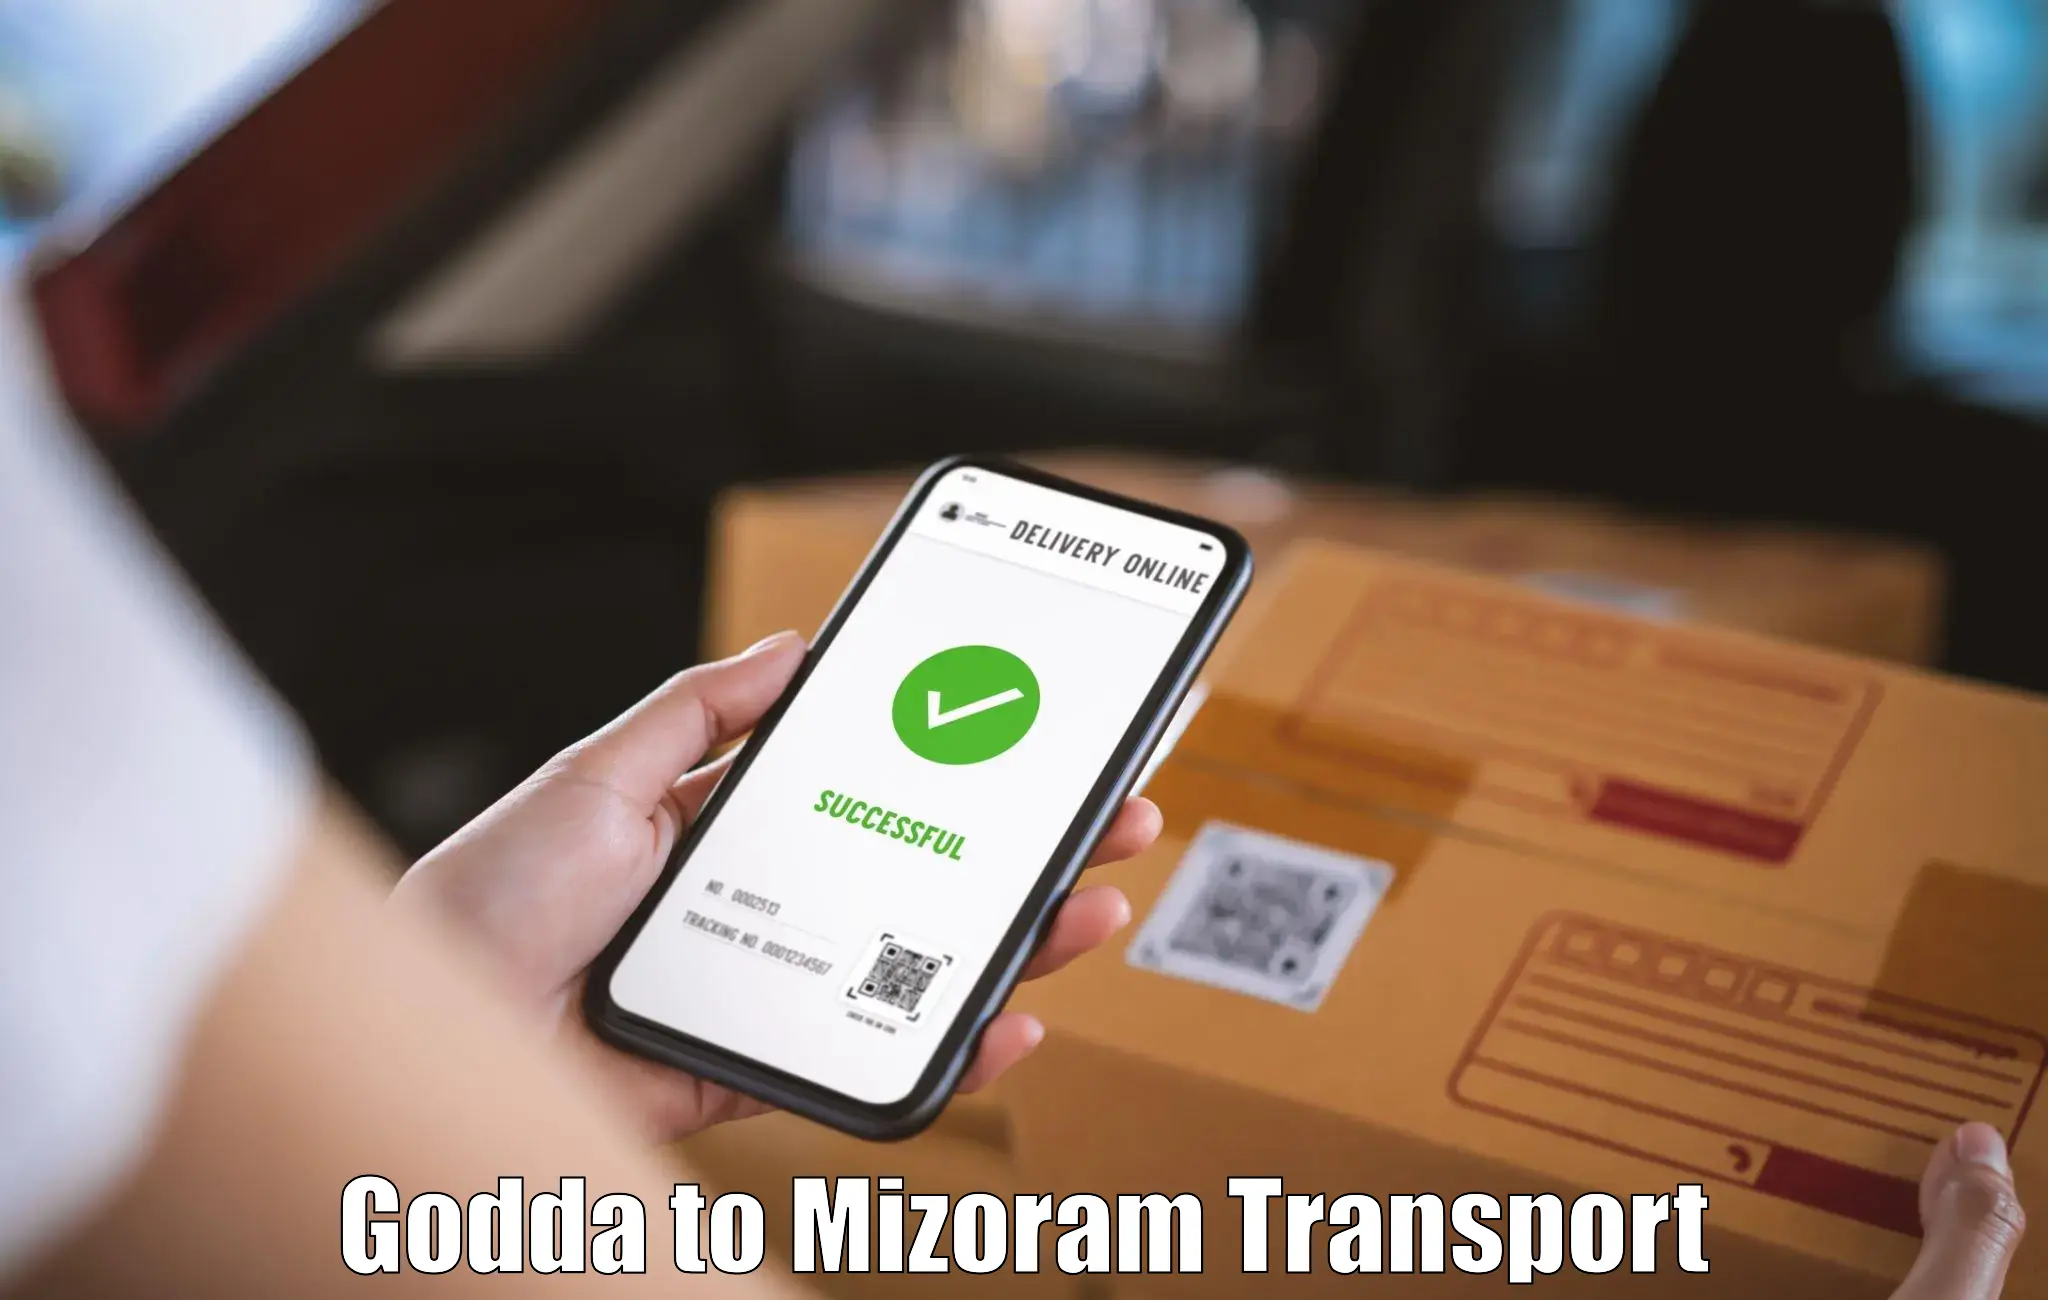 Transport in sharing Godda to Thenzawl